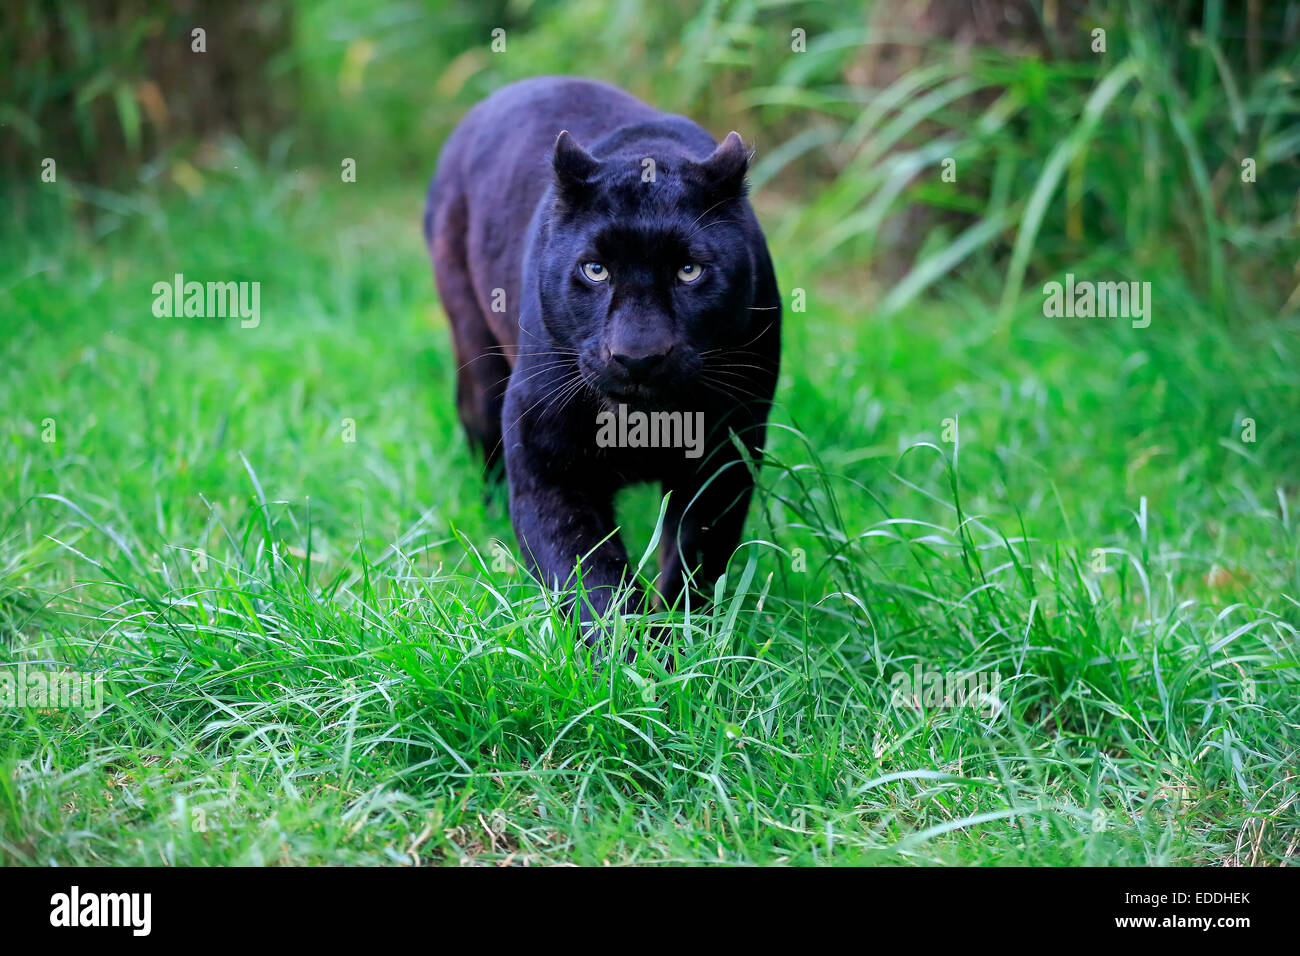 Léopard, panthère noire (Panthera pardus), des profils, de filatures, originaire d'Afrique, captive, Angleterre, Royaume-Uni Banque D'Images